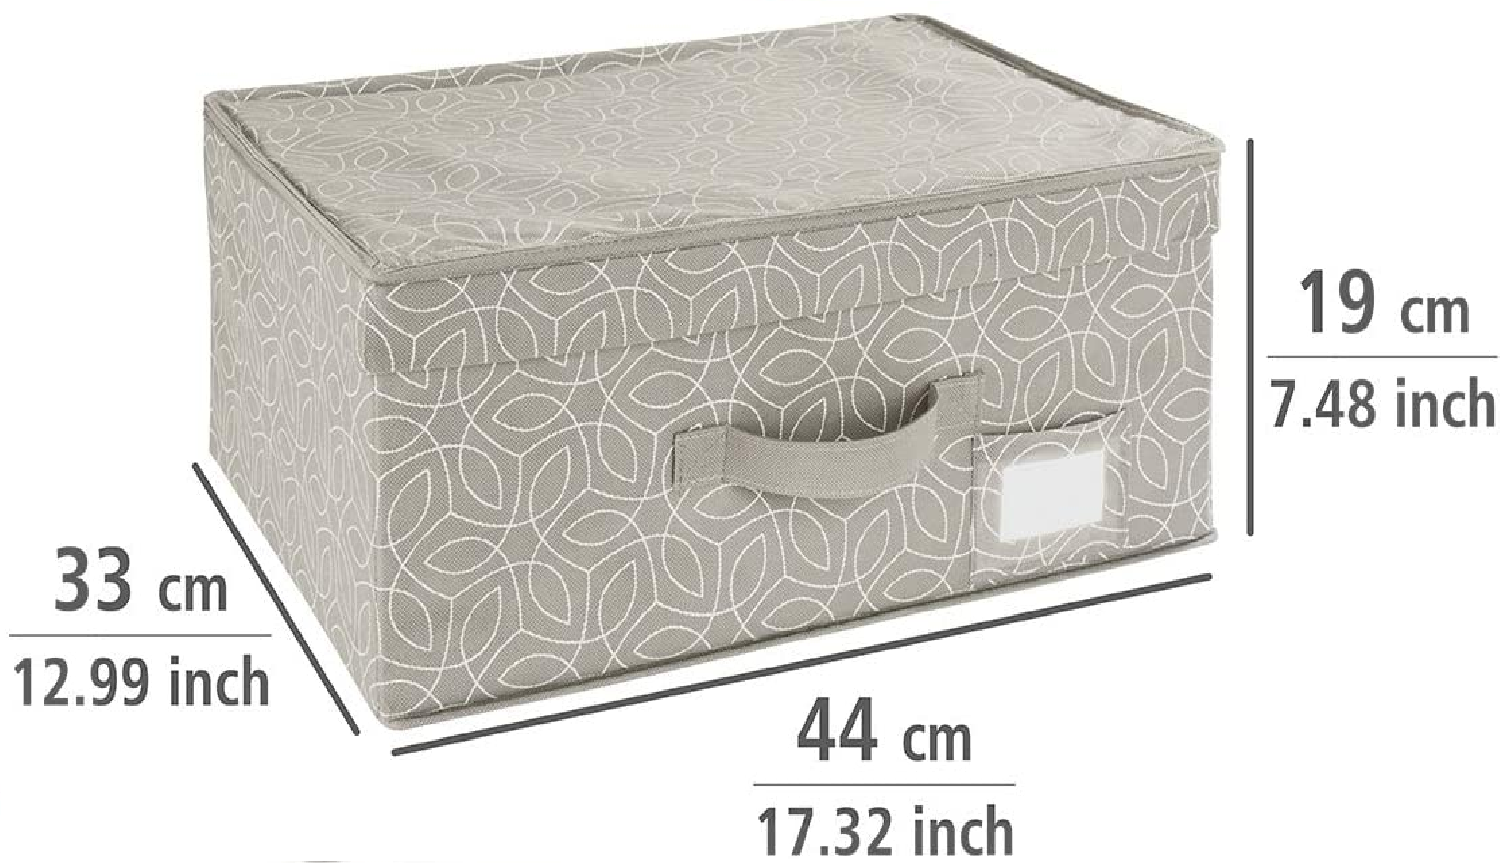 Aufbewahrungsbox Balance - Aufbewahrungskorb mit Deckel, Polypropylen, 44 x 19 x 33 cm, Taupe